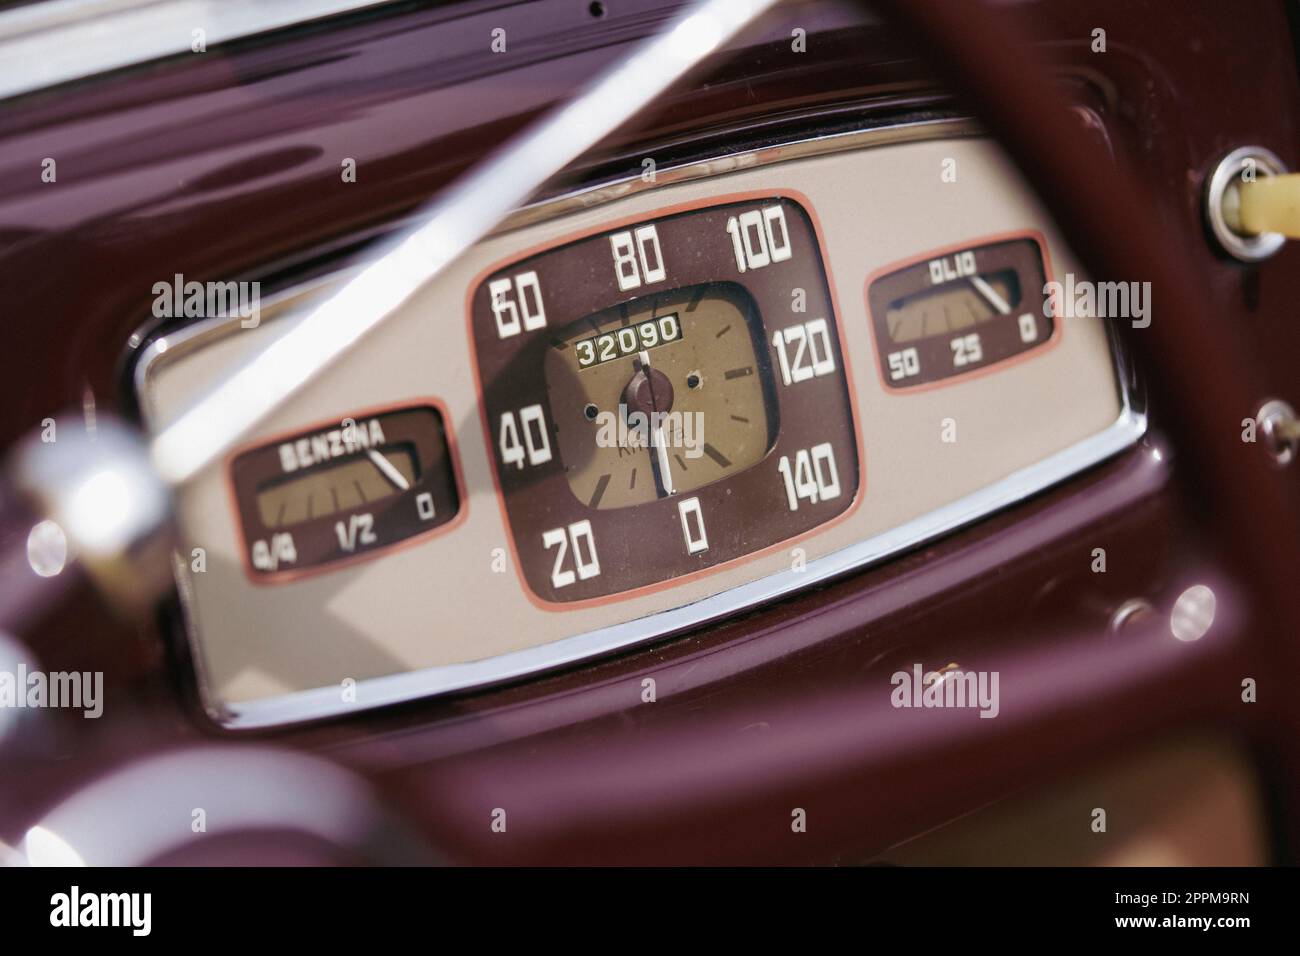 Speedometer meter gauge on an old vintage car Stock Photo